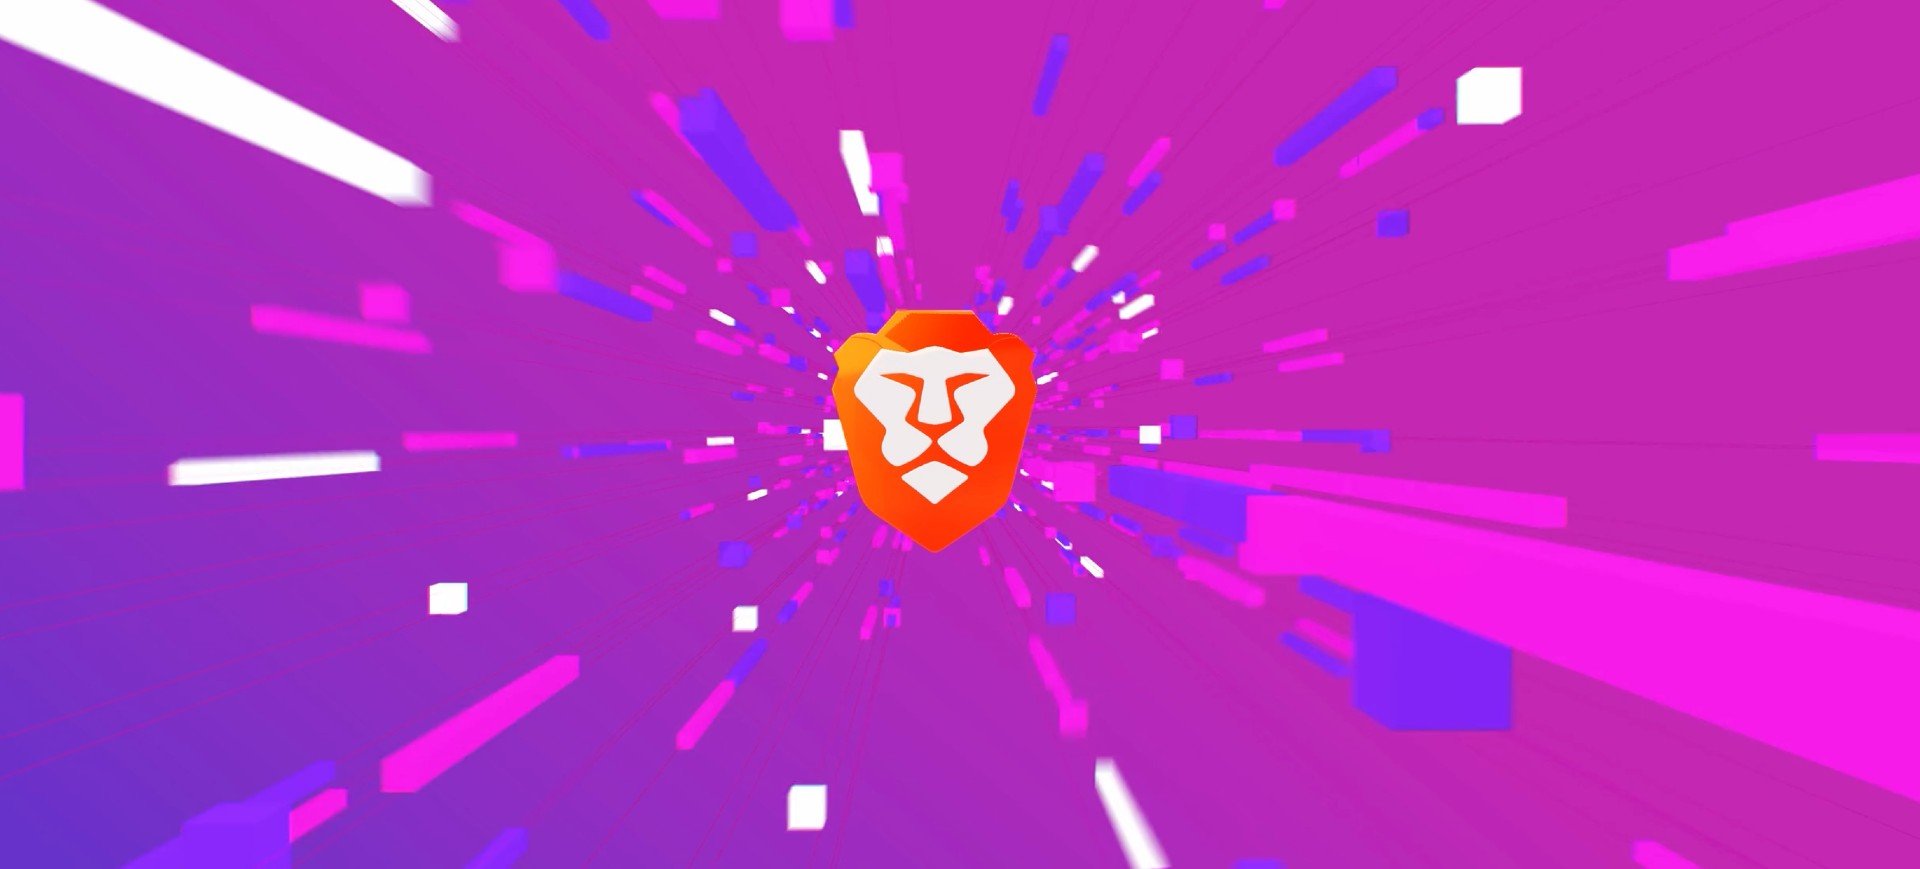 Imagem com fundo degradê de rosa e roxo, ao centro um leão laranja, que é o logotipo do navegador Brave